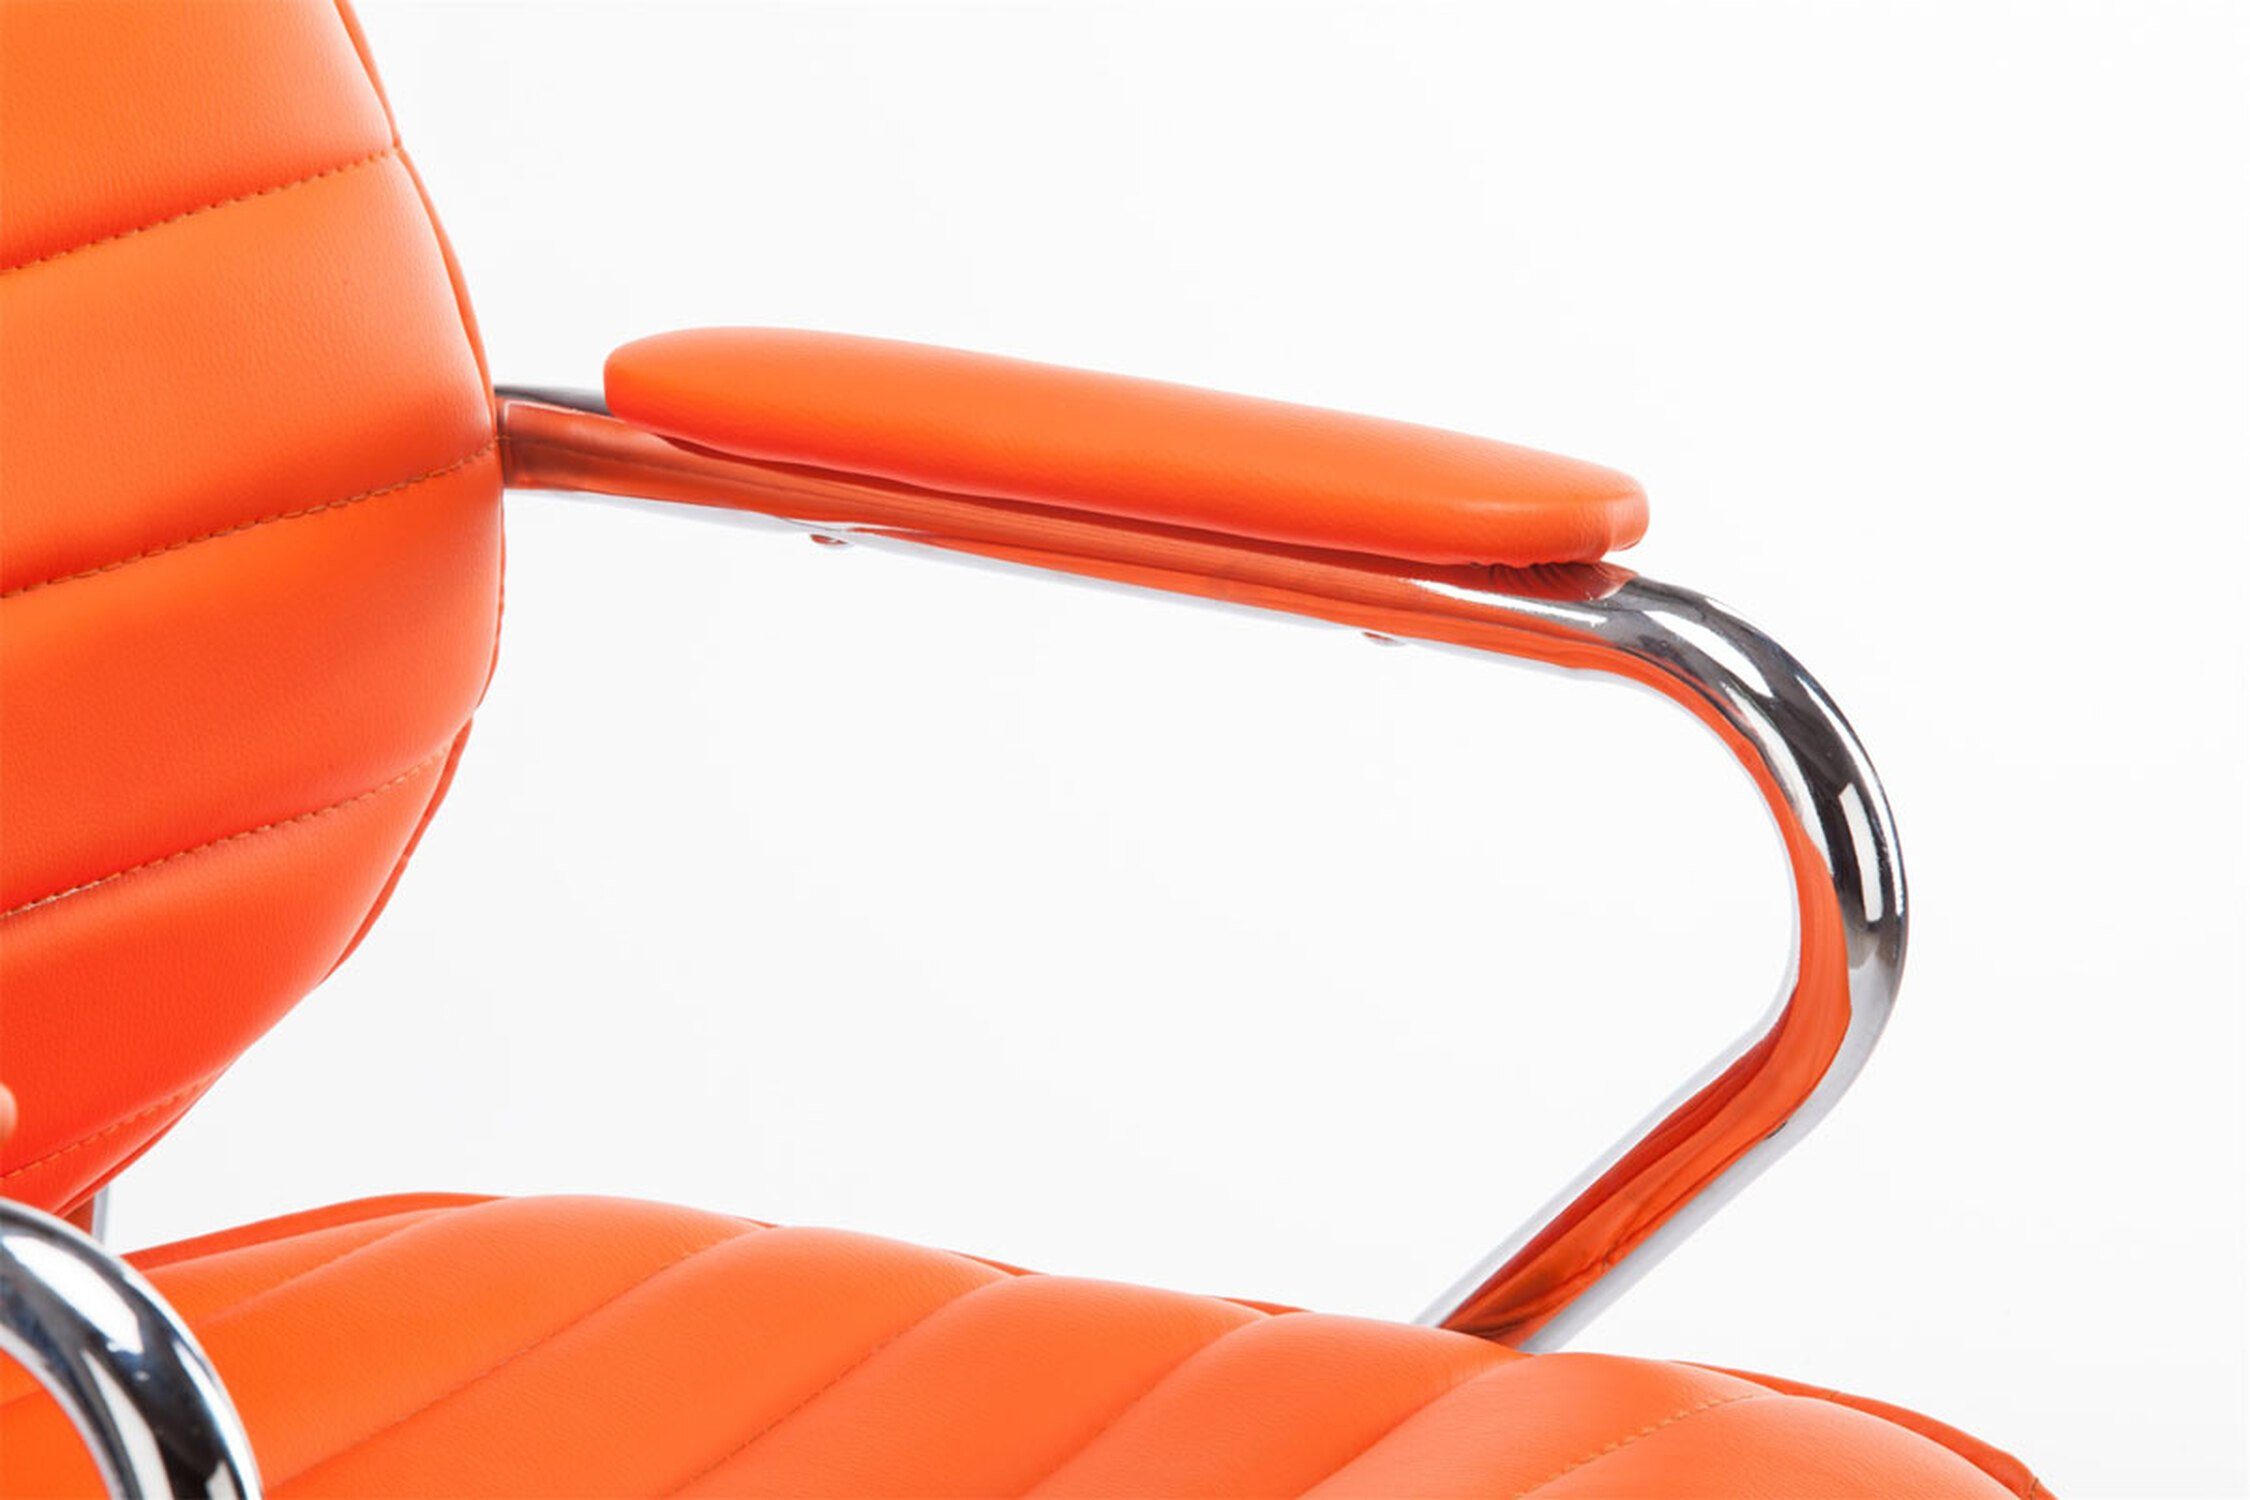 höhenverstellbar Bürostuhl Gestell: Kunstleder Chefsessel, drehbar Bürostuhl chrom - orange Metall Rocket und XXL), Rückenlehne TPFLiving bequemer Drehstuhl, 360° (Schreibtischstuhl, mit - Sitz: